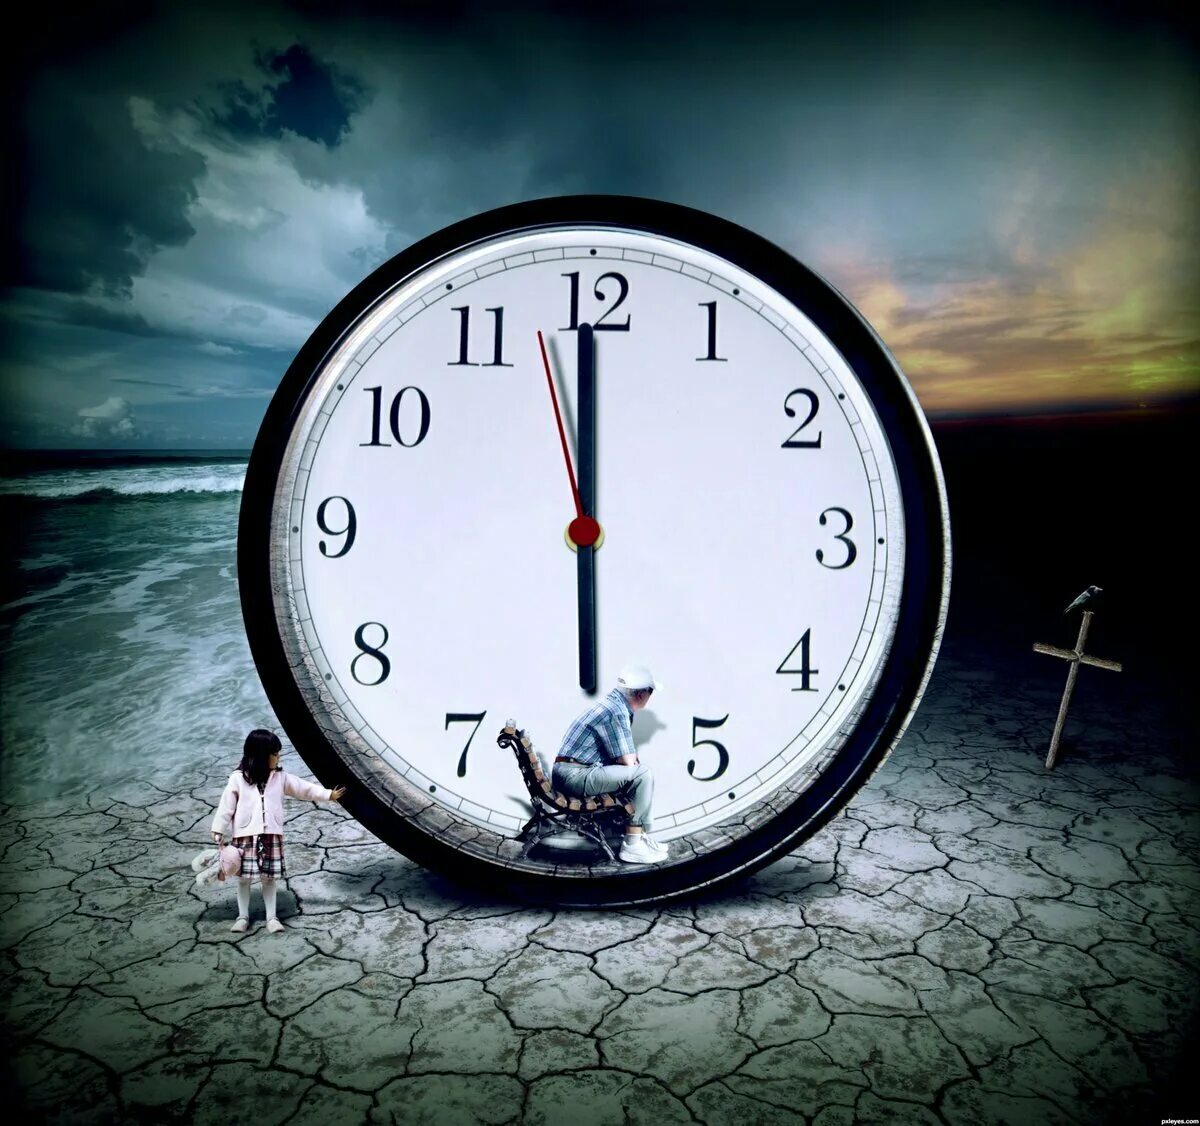 Времени уйдет на изучение. Часы бегут. А время уходит. Изображение времени. Медленные часы.